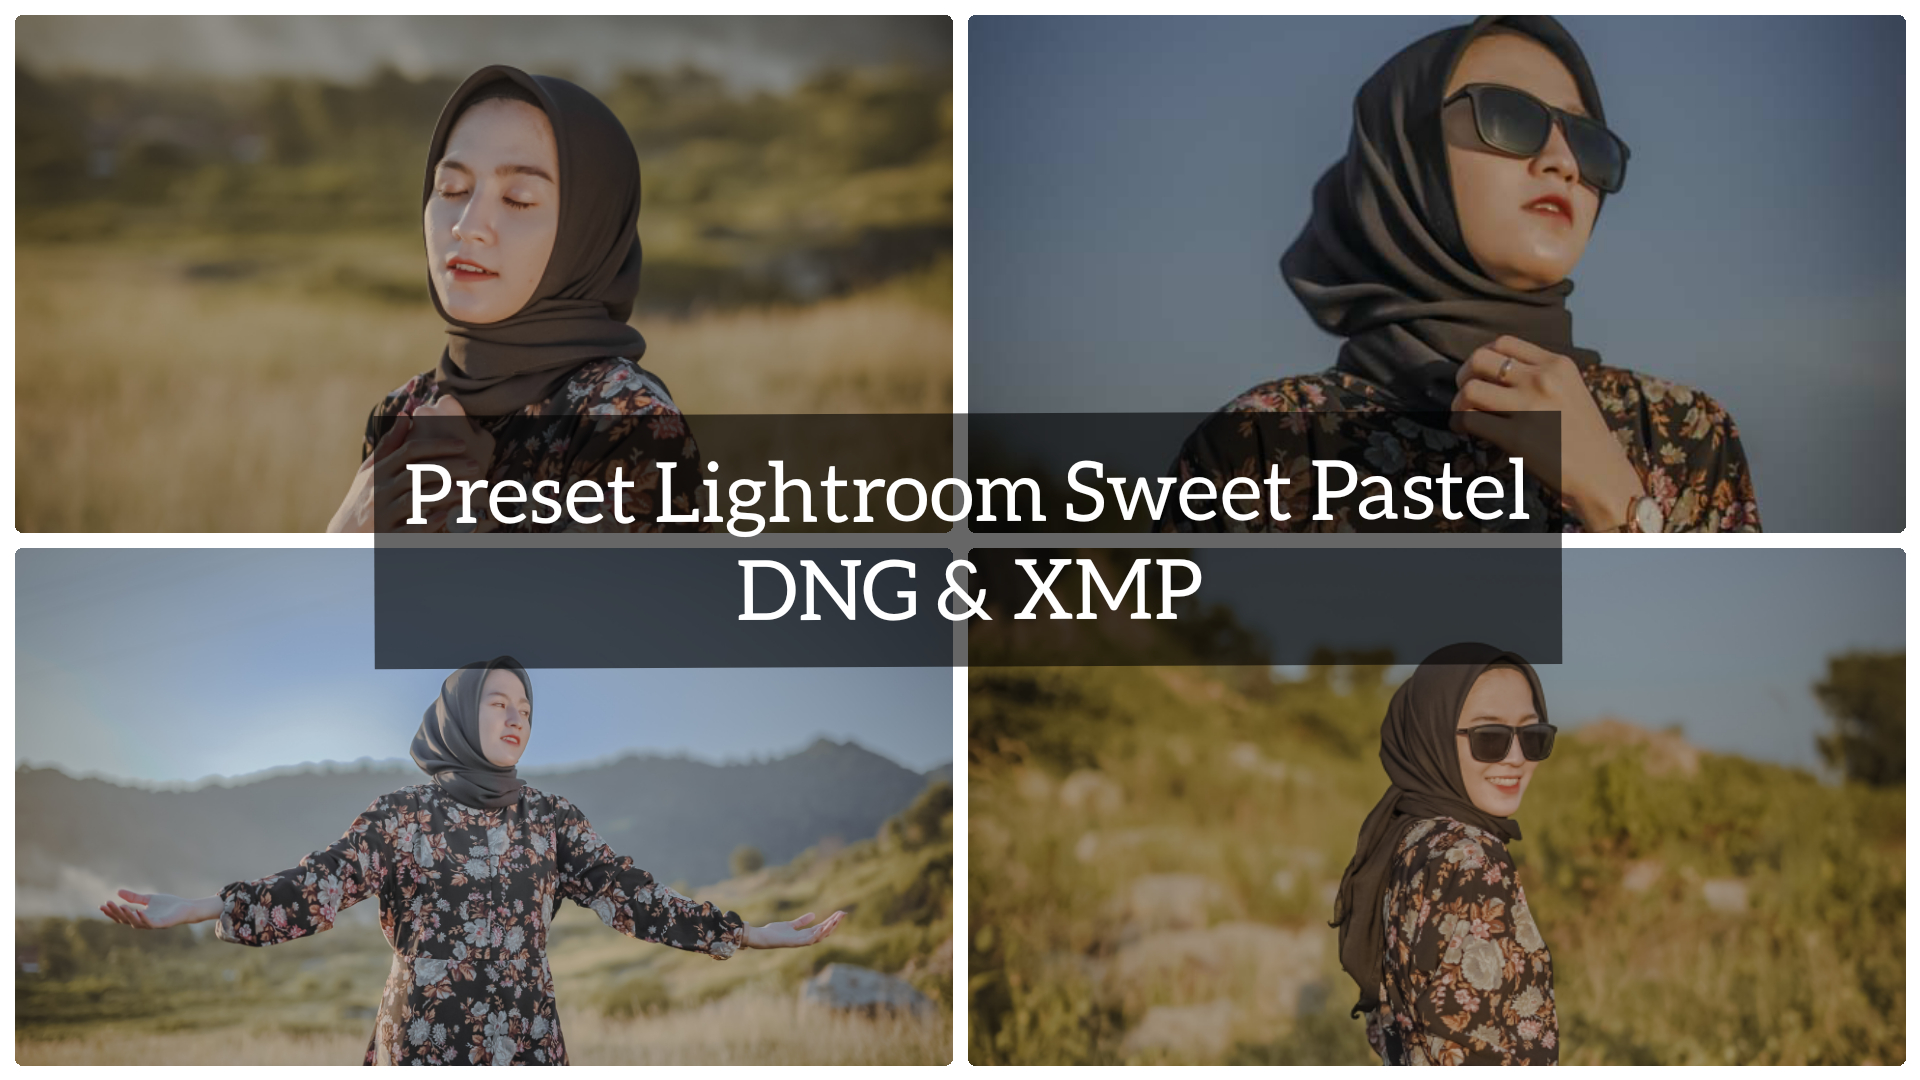 Preset Lightroom Sweet Pastel Terbaru DNG & XMP